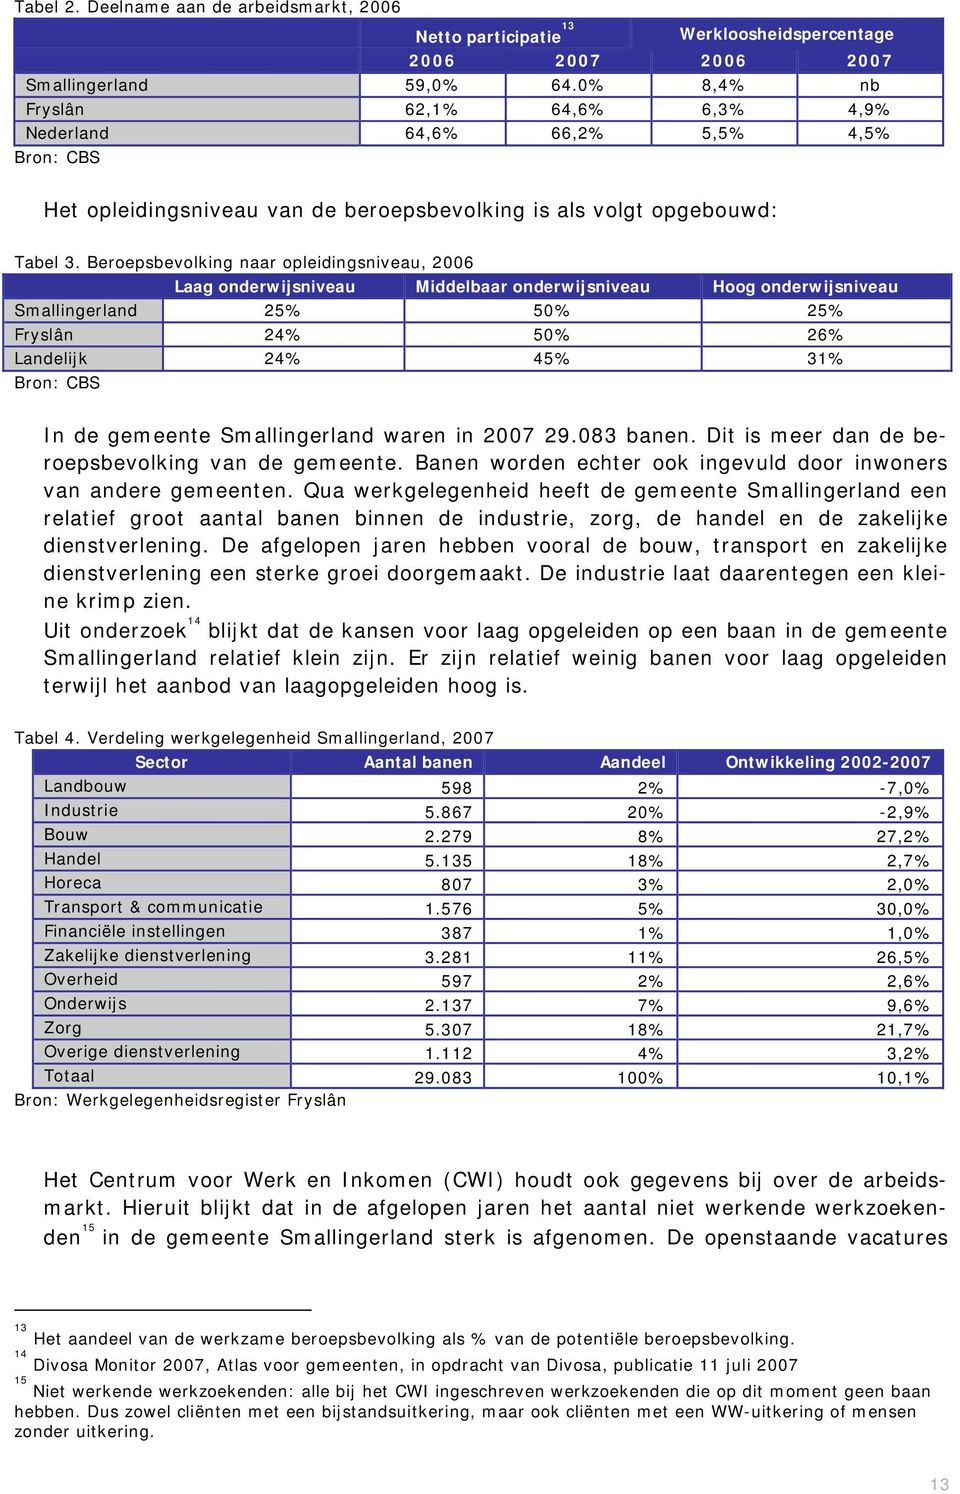 Berepsbevlking naar pleidingsniveau, 2006 Laag nderwijsniveau Middelbaar nderwijsniveau Hg nderwijsniveau Smallingerland 25% 50% 25% Fryslân 24% 50% 26% Landelijk 24% 45% 31% Brn: CBS In de gemeente